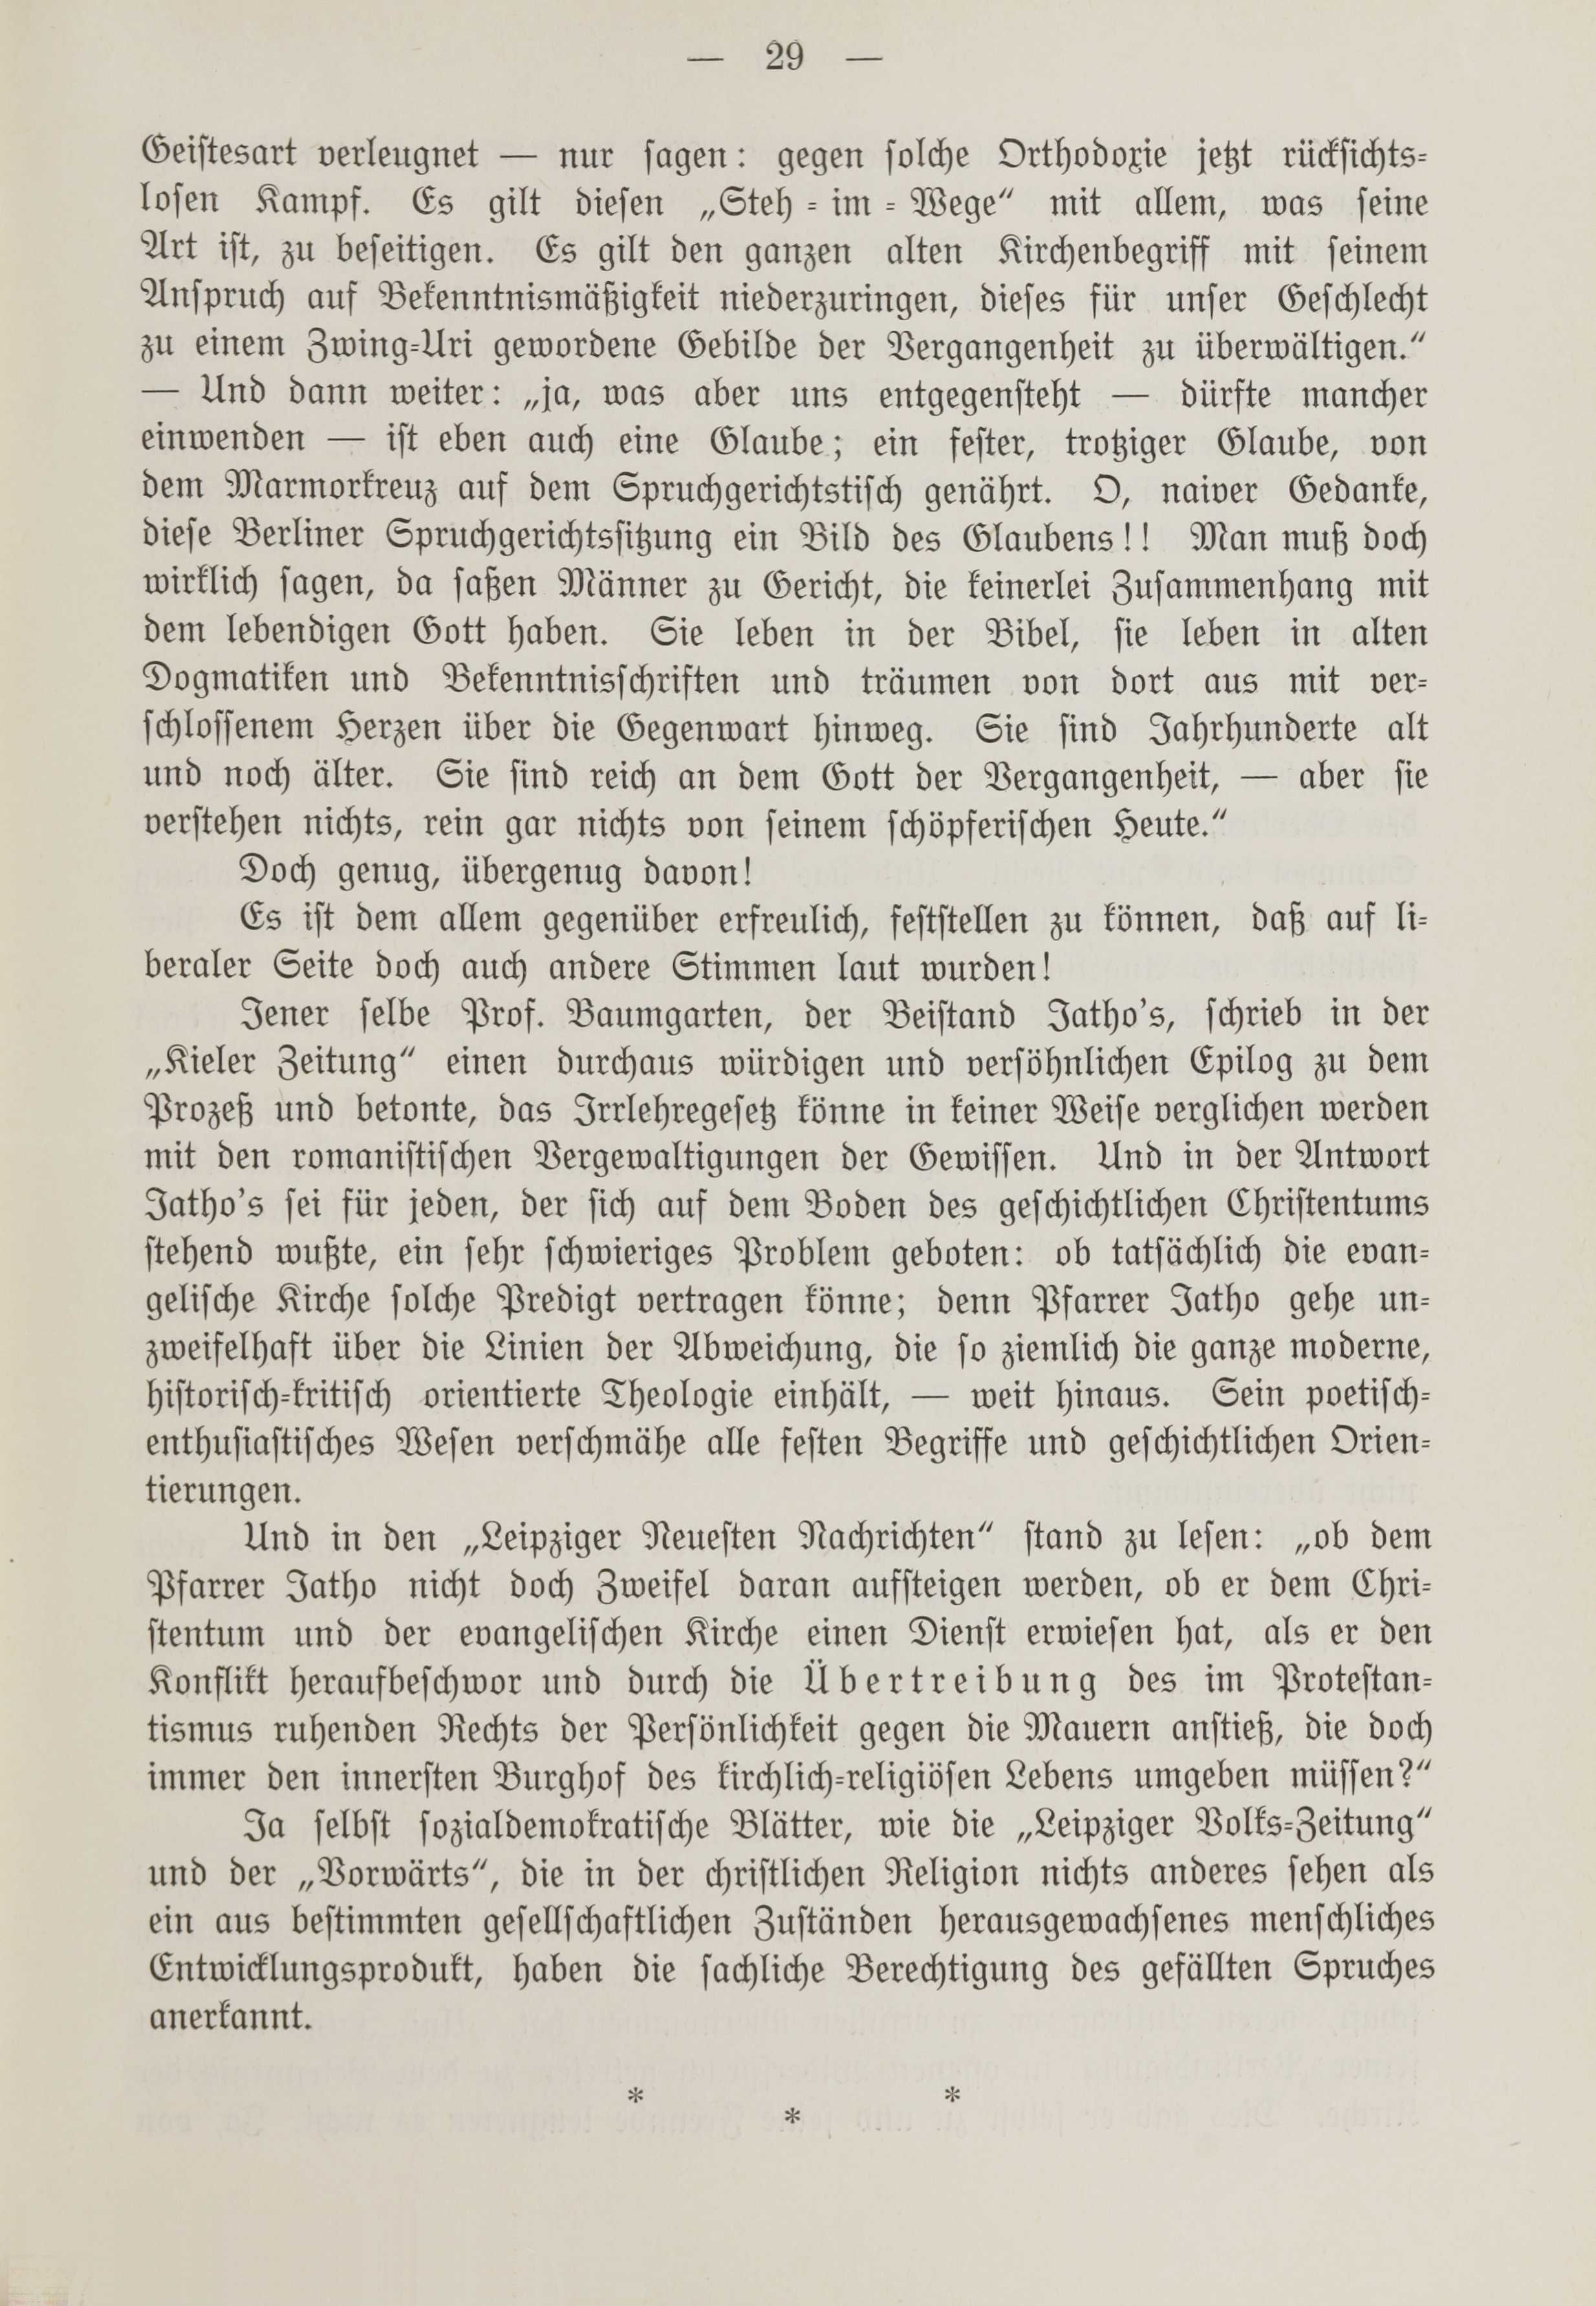 Deutsche Monatsschrift für Russland [1] (1912) | 36. (29) Main body of text